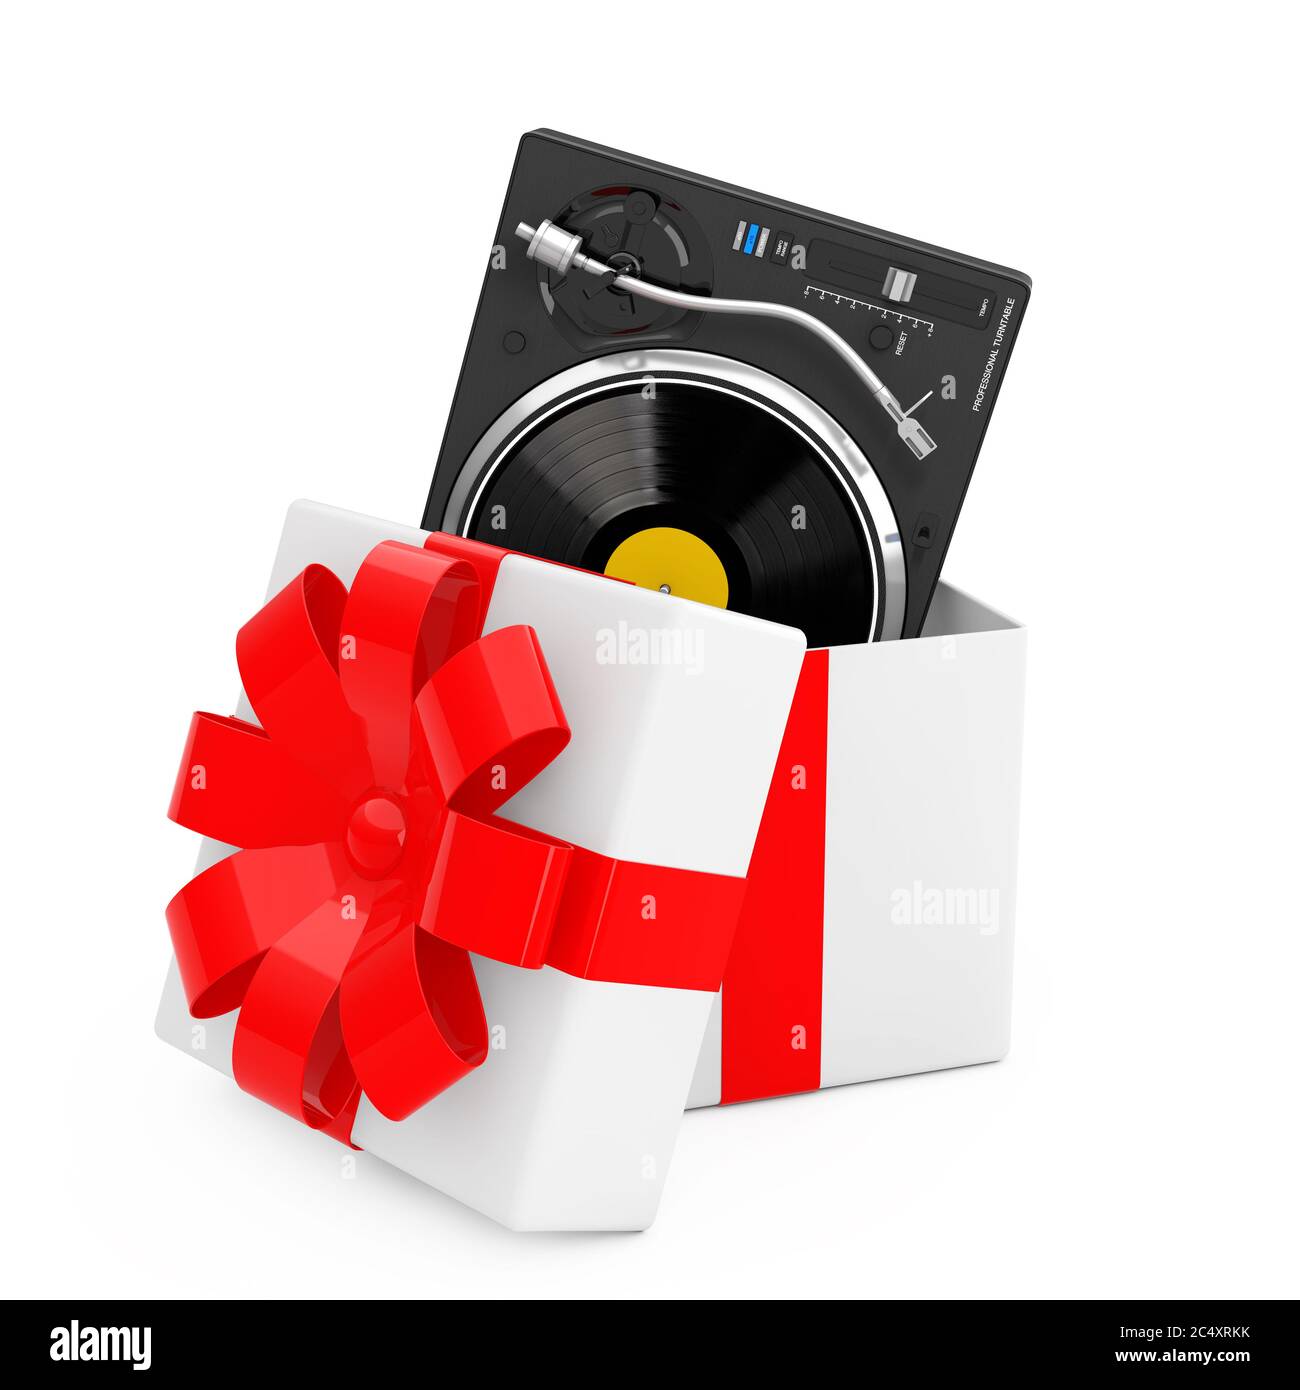 Lecteur de disques en vinyle platine DJ professionnel sortir de la boîte cadeau avec ruban rouge sur fond blanc. Rendu 3d Banque D'Images